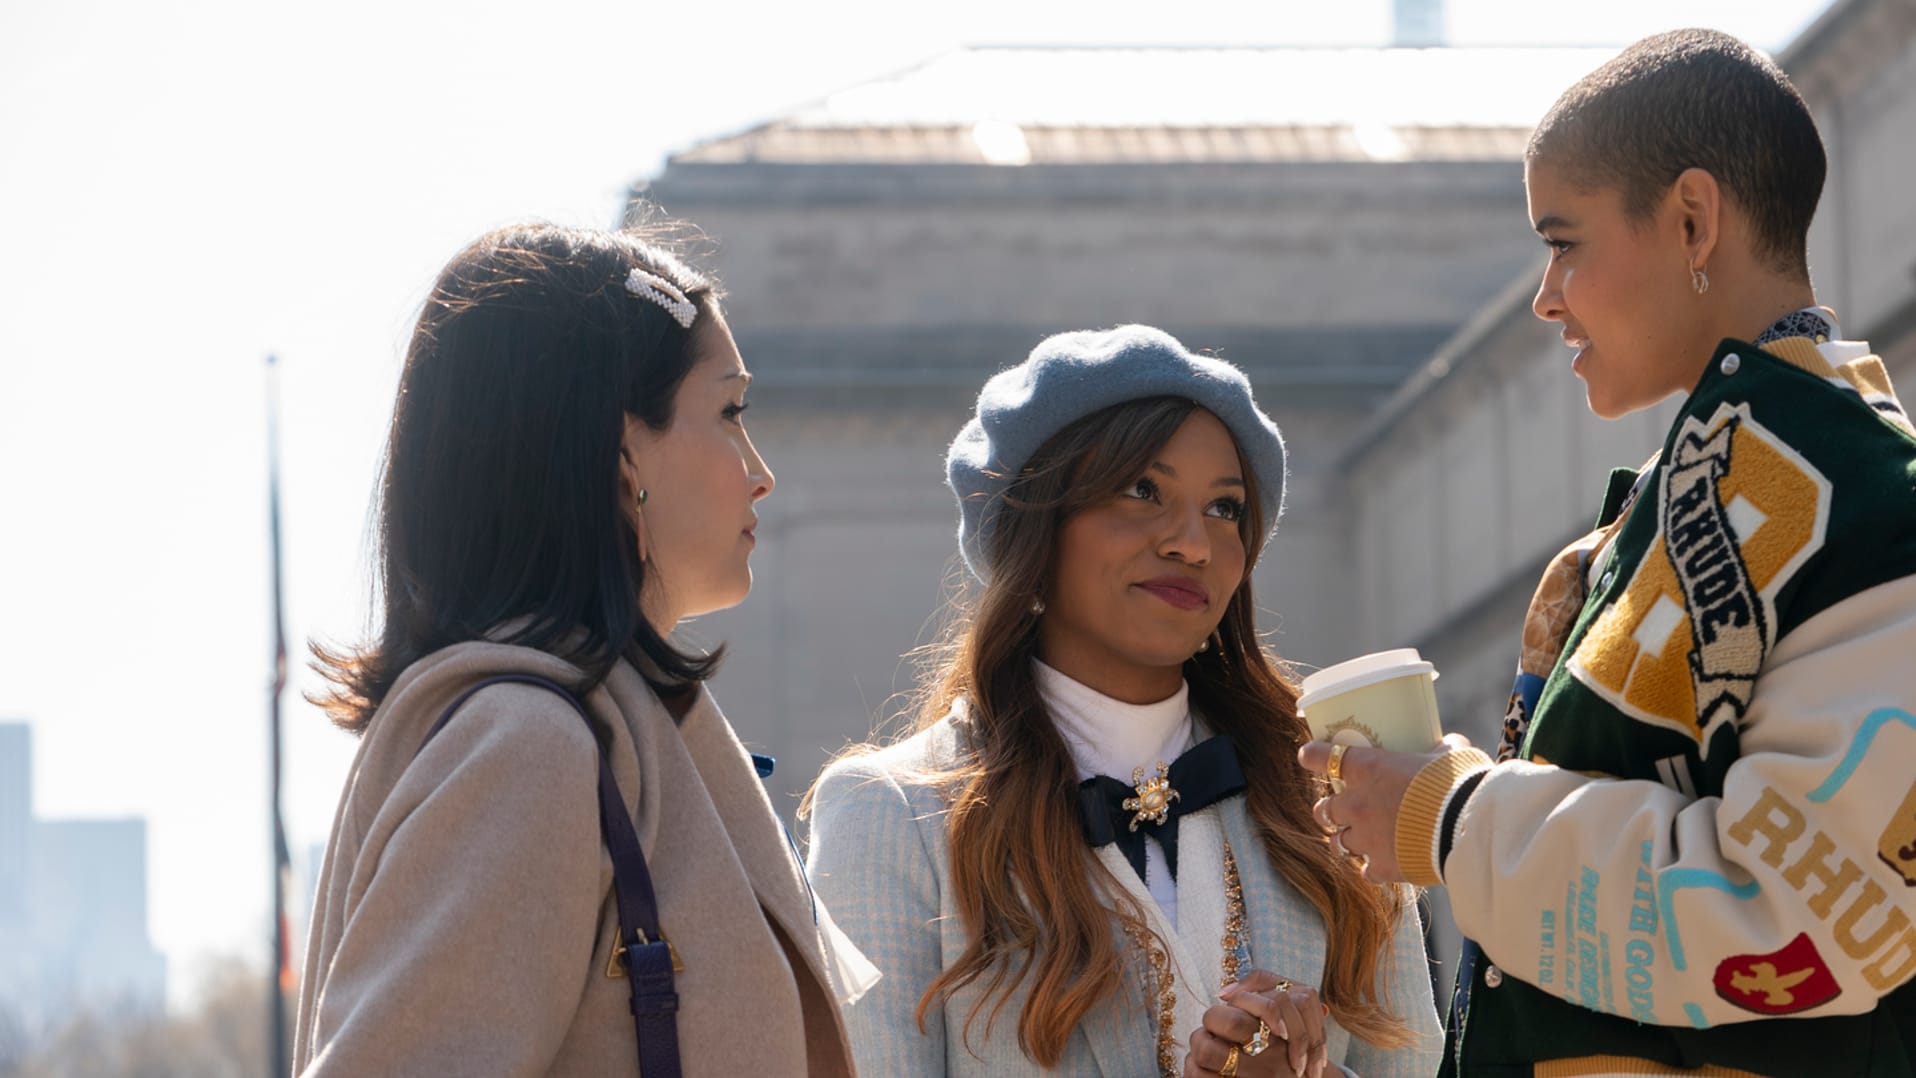 Gossip Girl Season 2 Review: HBO Max Series Brings the Fun